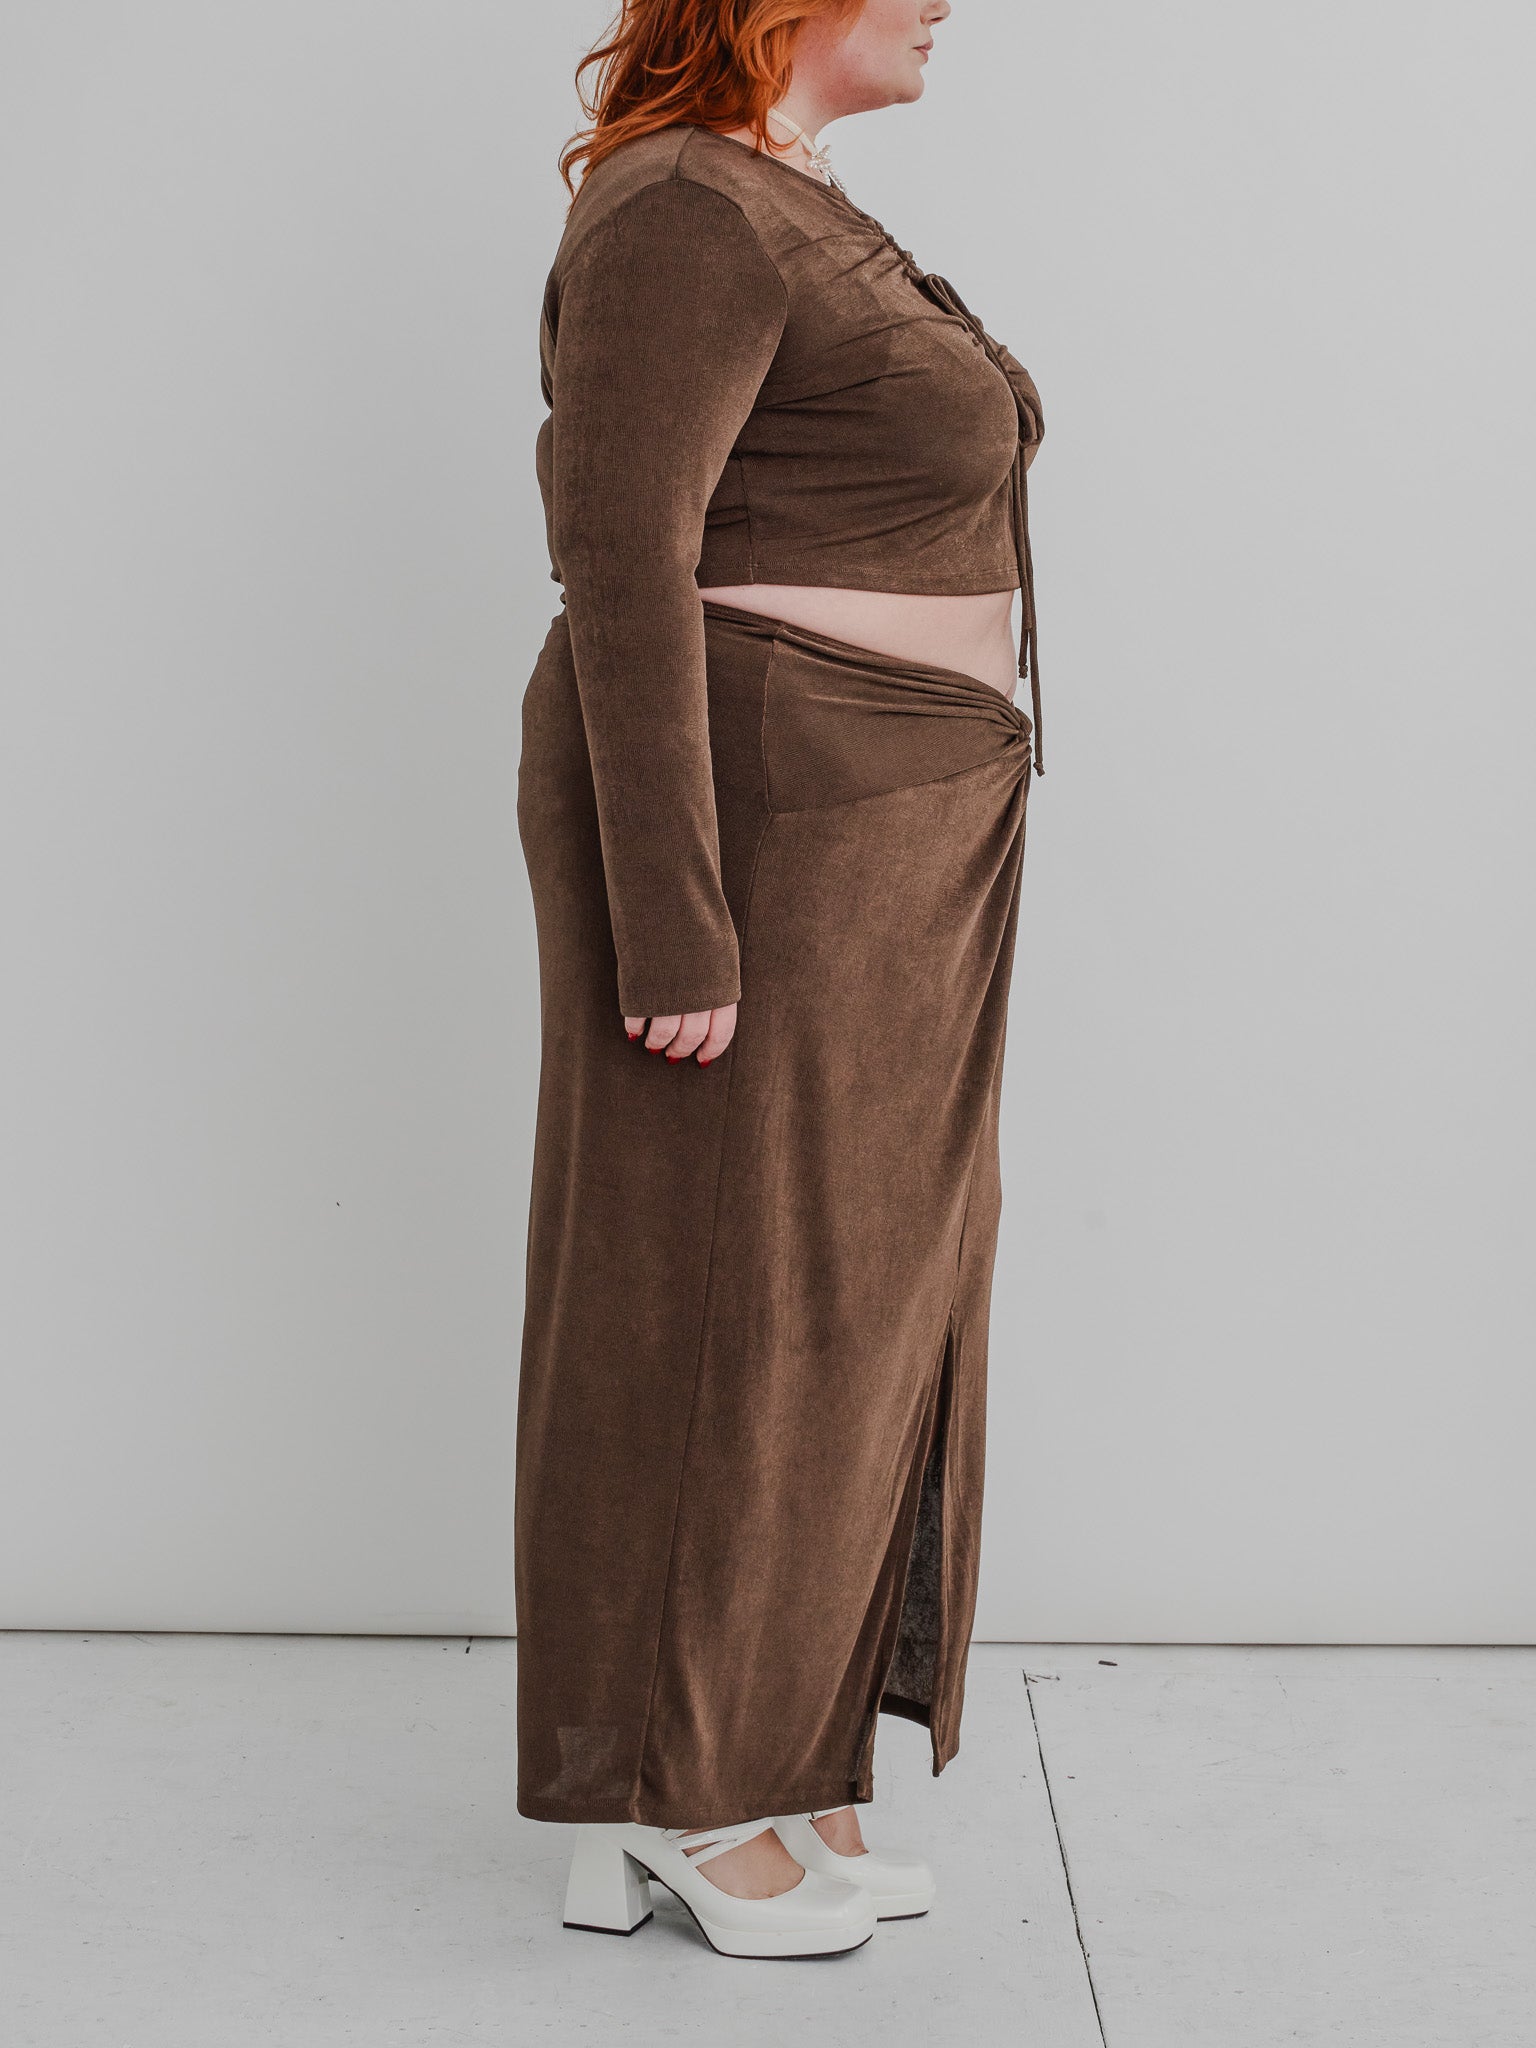 NLT - Brown Front Slit Midi Skirt